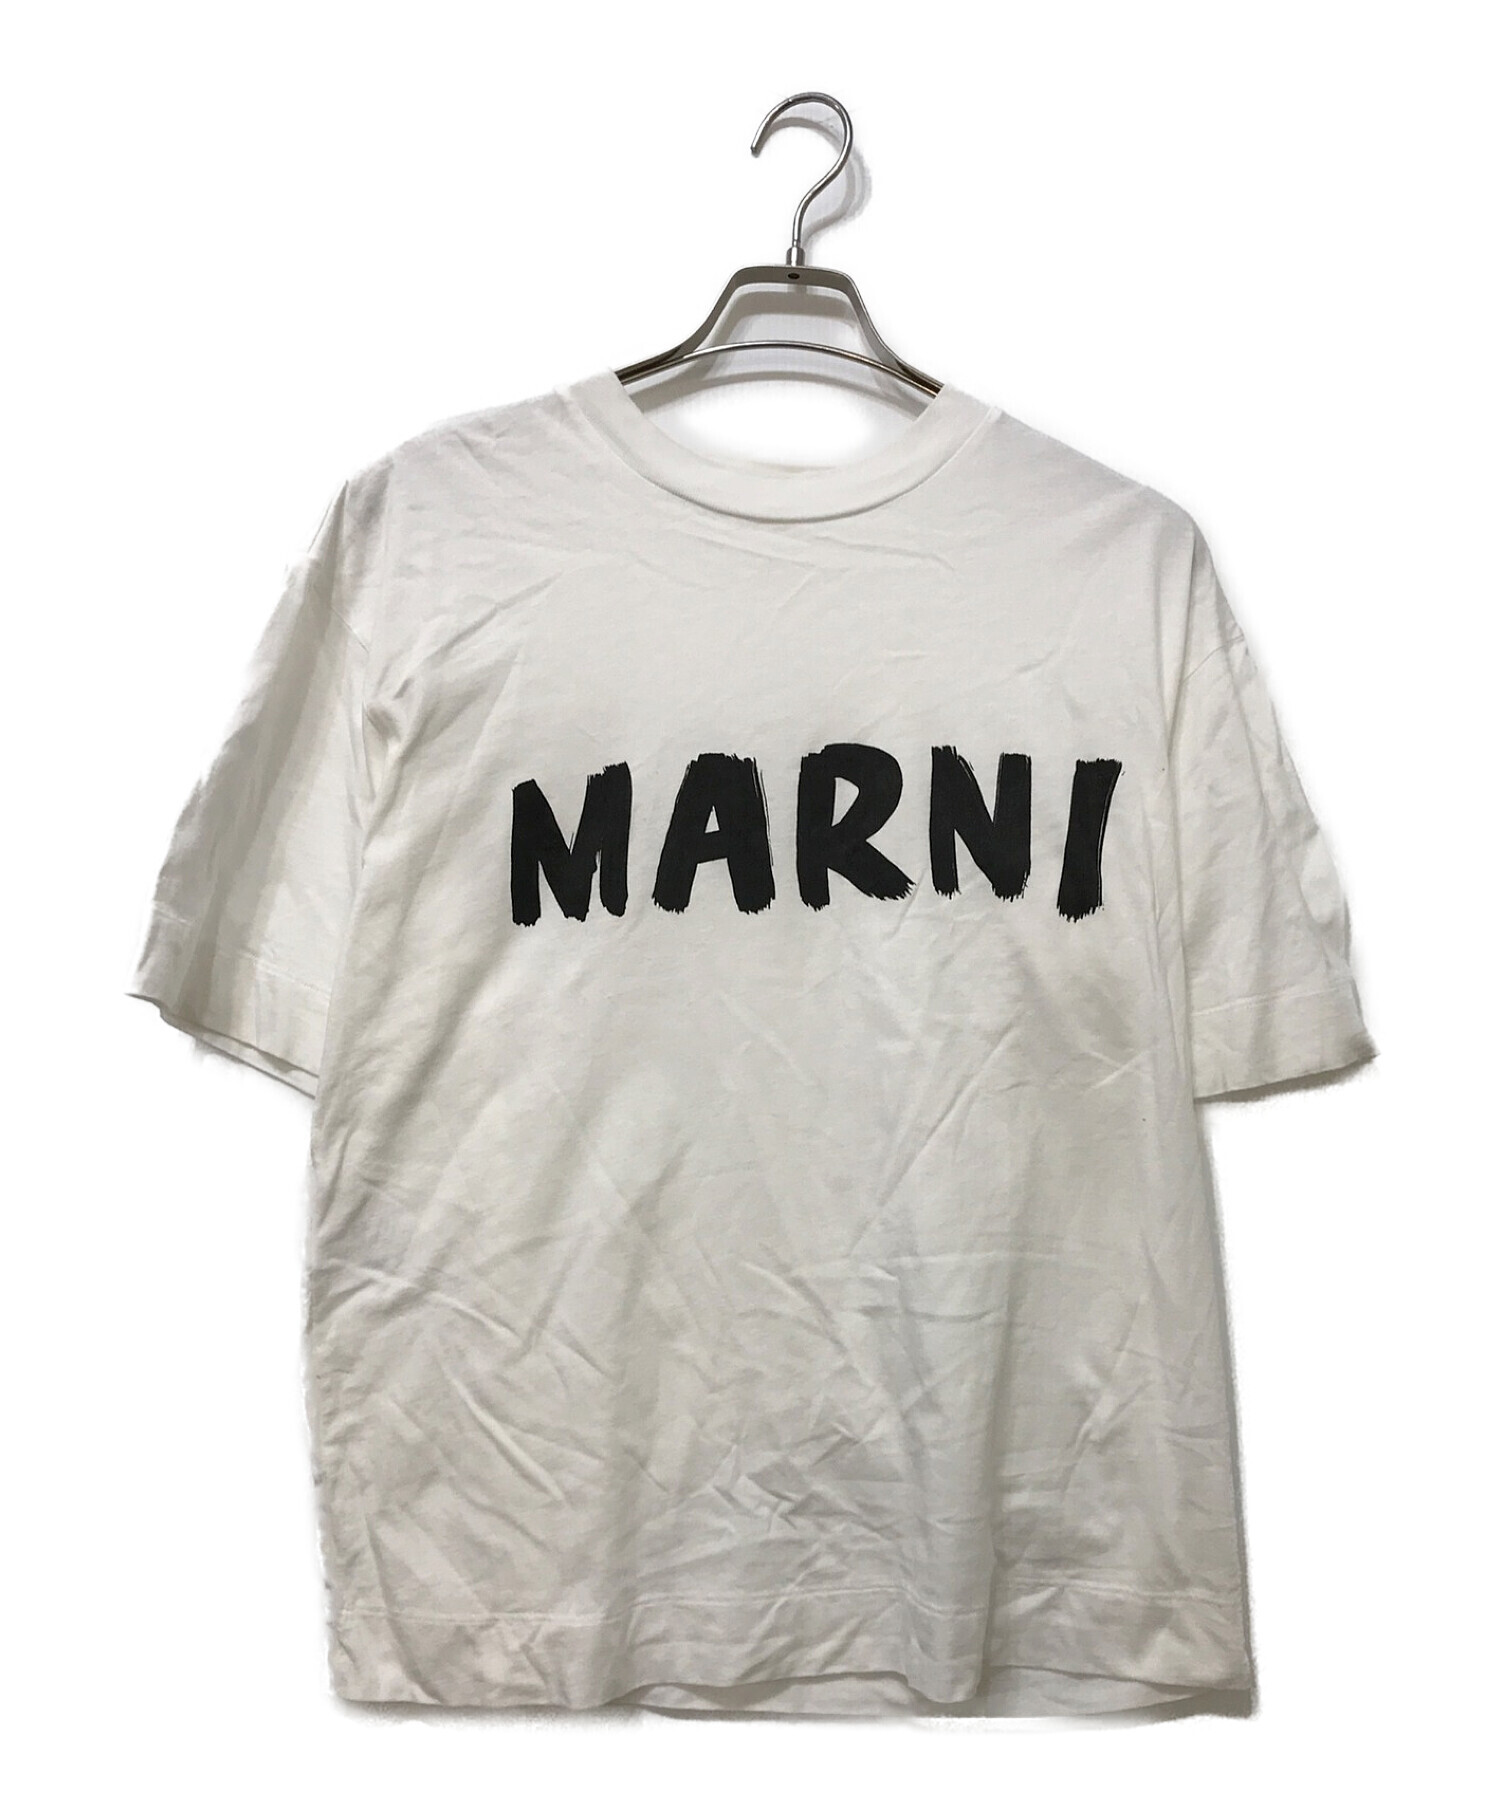 【新品タグ付】MARNI マルニ プリントTシャツ